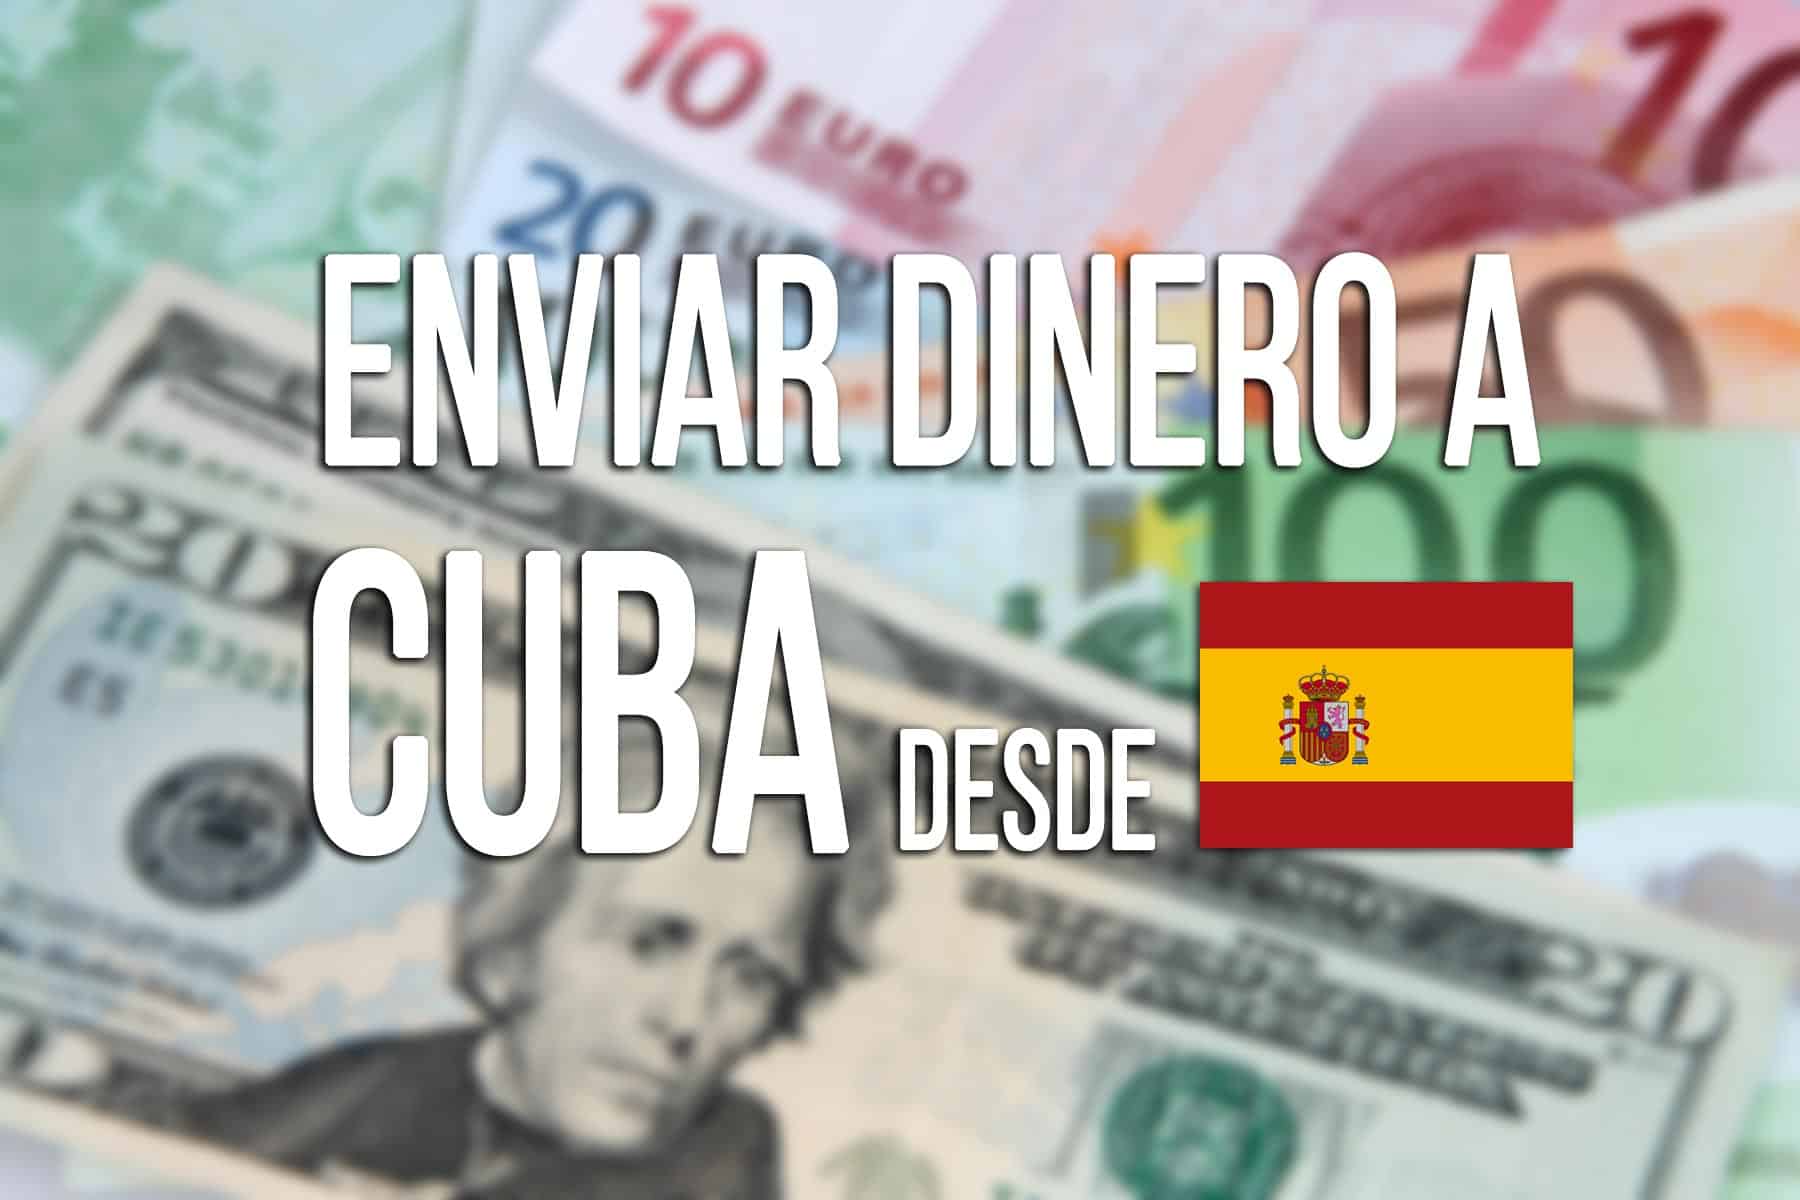 Enviar Dinero a Cuba desde España